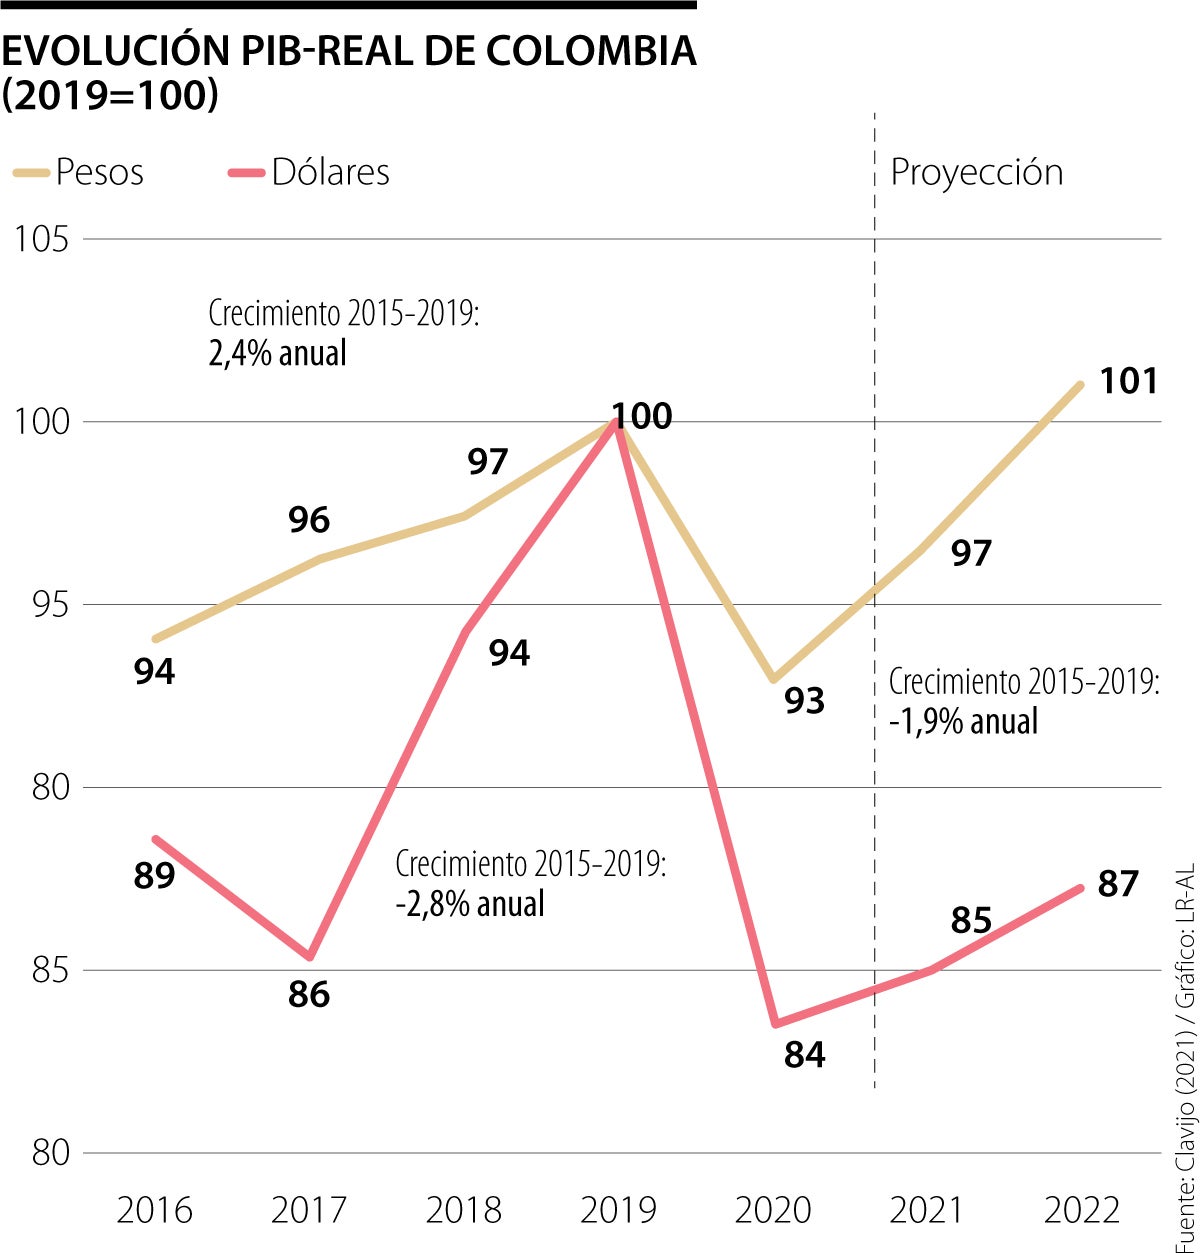 Crecimiento PIBreal de Colombia 20202022